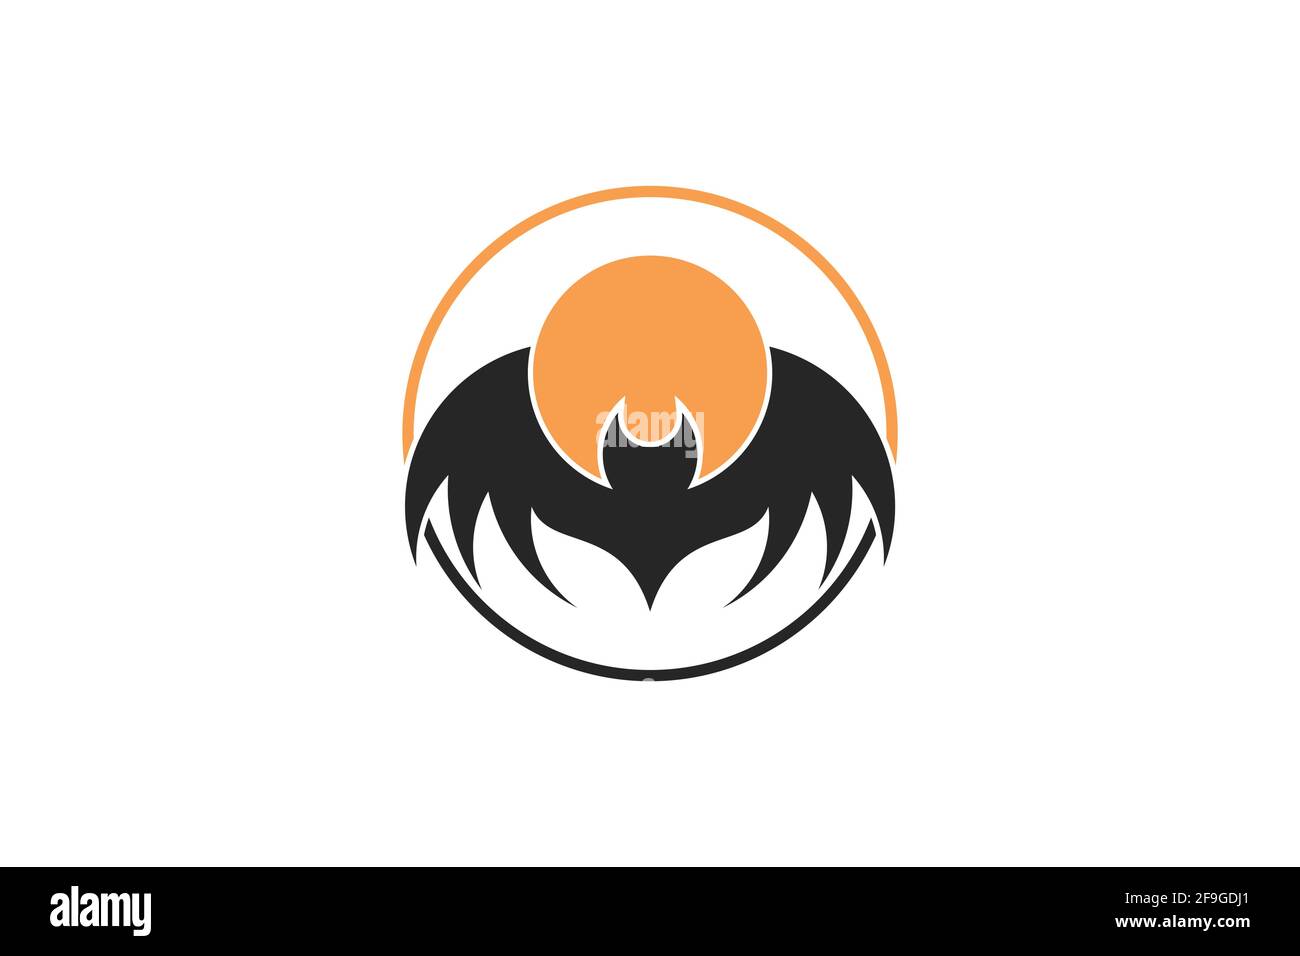 Moonlight Fledermaus-Logo. Abstraktes Design-Konzept mit Mondlicht-Fledermaus-Logo. Kombination von Fledermaus und Mond in einem Kreis. Kreativ einfaches und minimalistisches Design. Stock Vektor